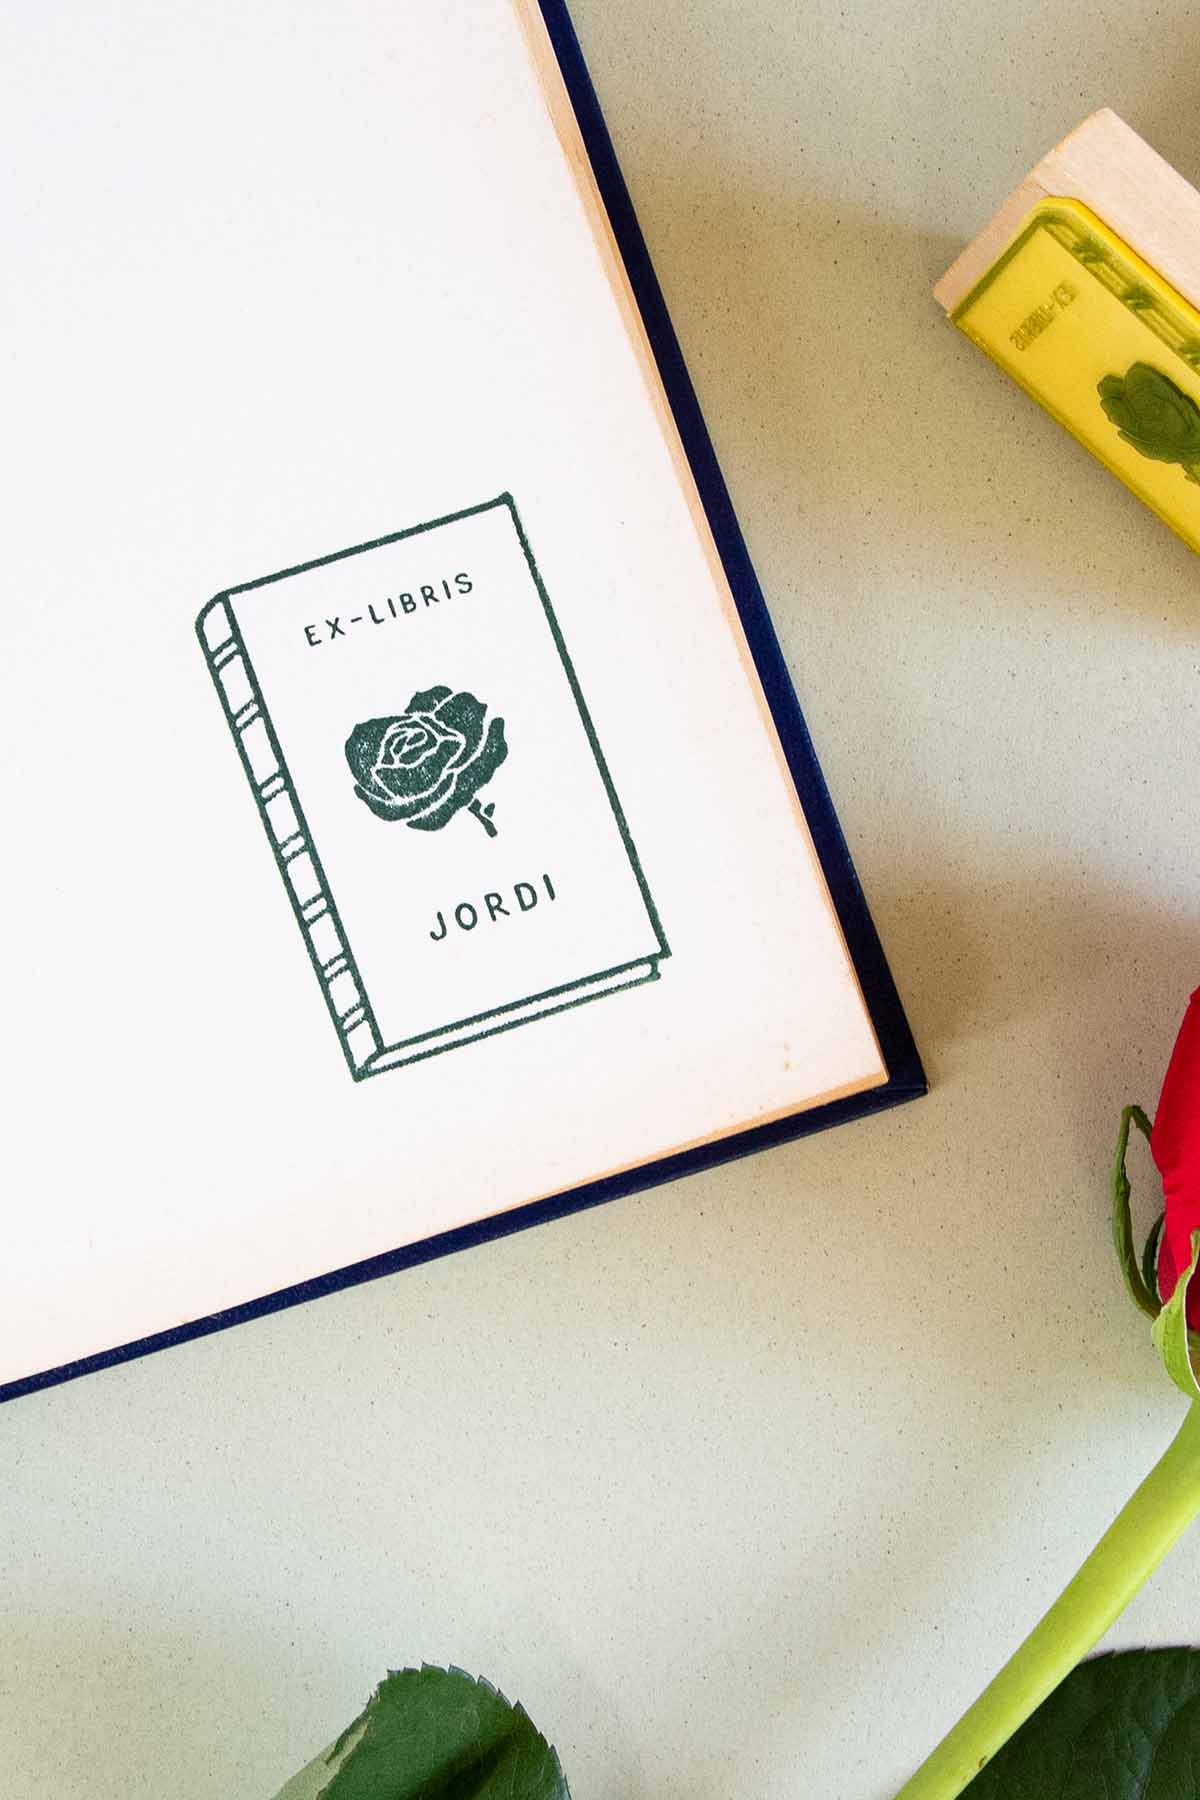 Portadilla de libro estampada con sello exlibris de un libro con una rosa enmedio